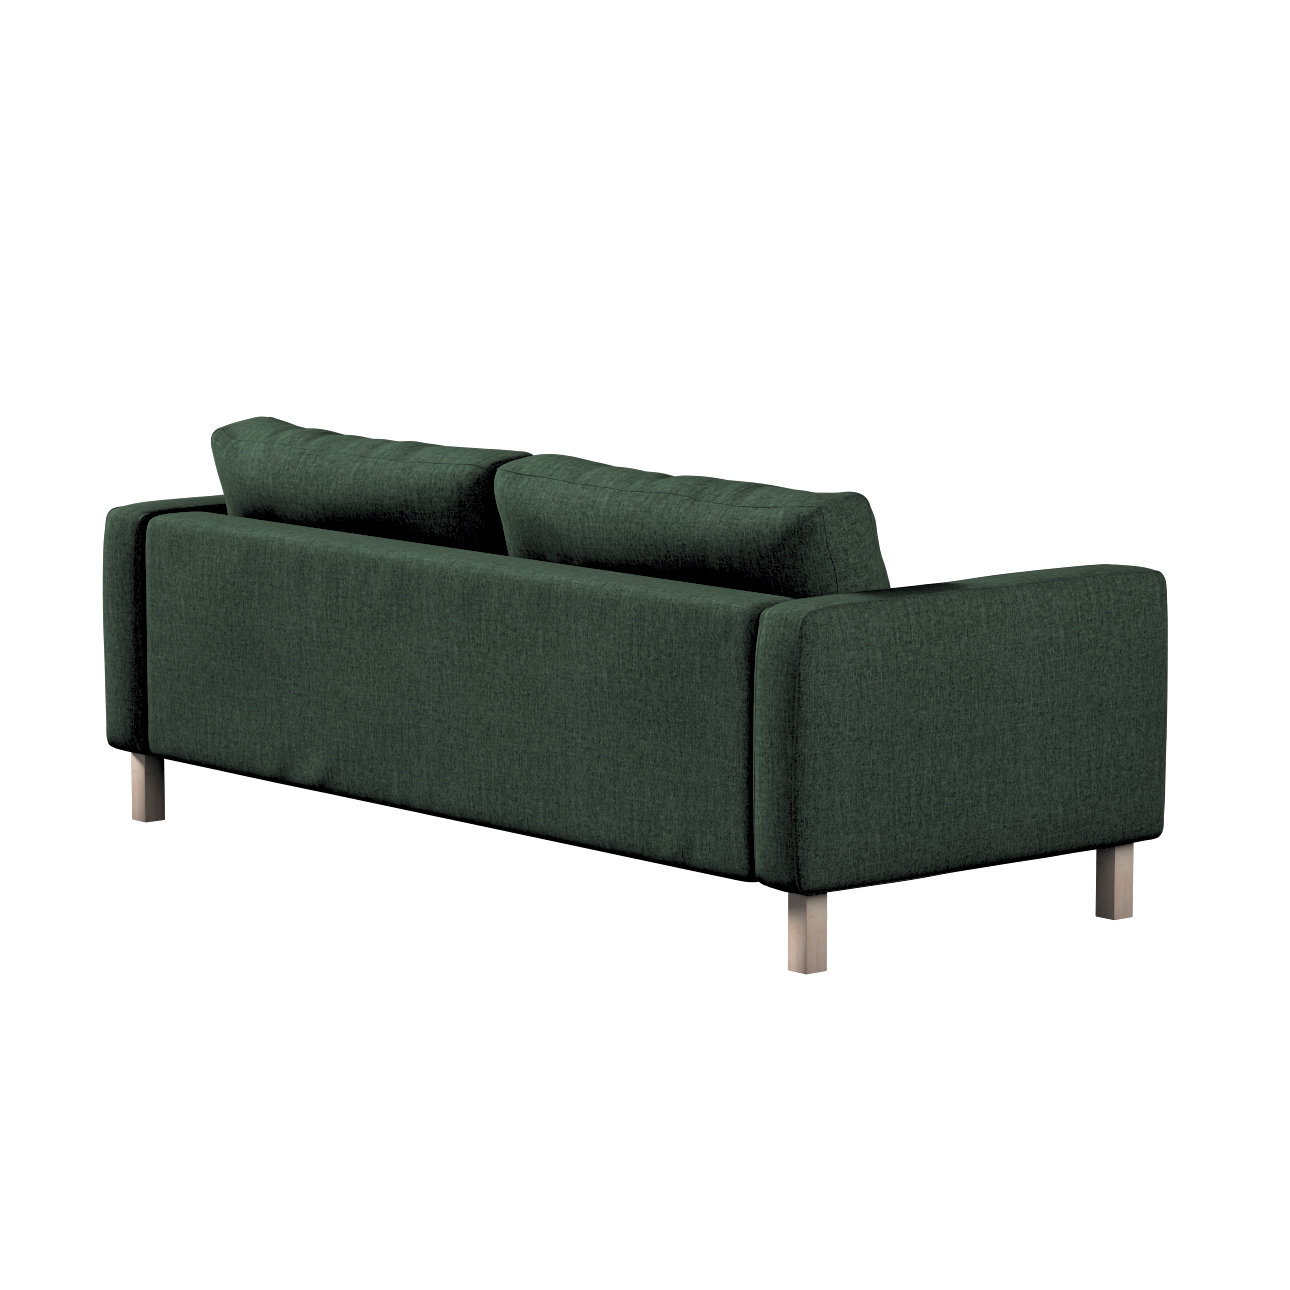 Bezug für Karlstad 3-Sitzer Sofa nicht ausklappbar, kurz, dunkelgrün, Bezug günstig online kaufen